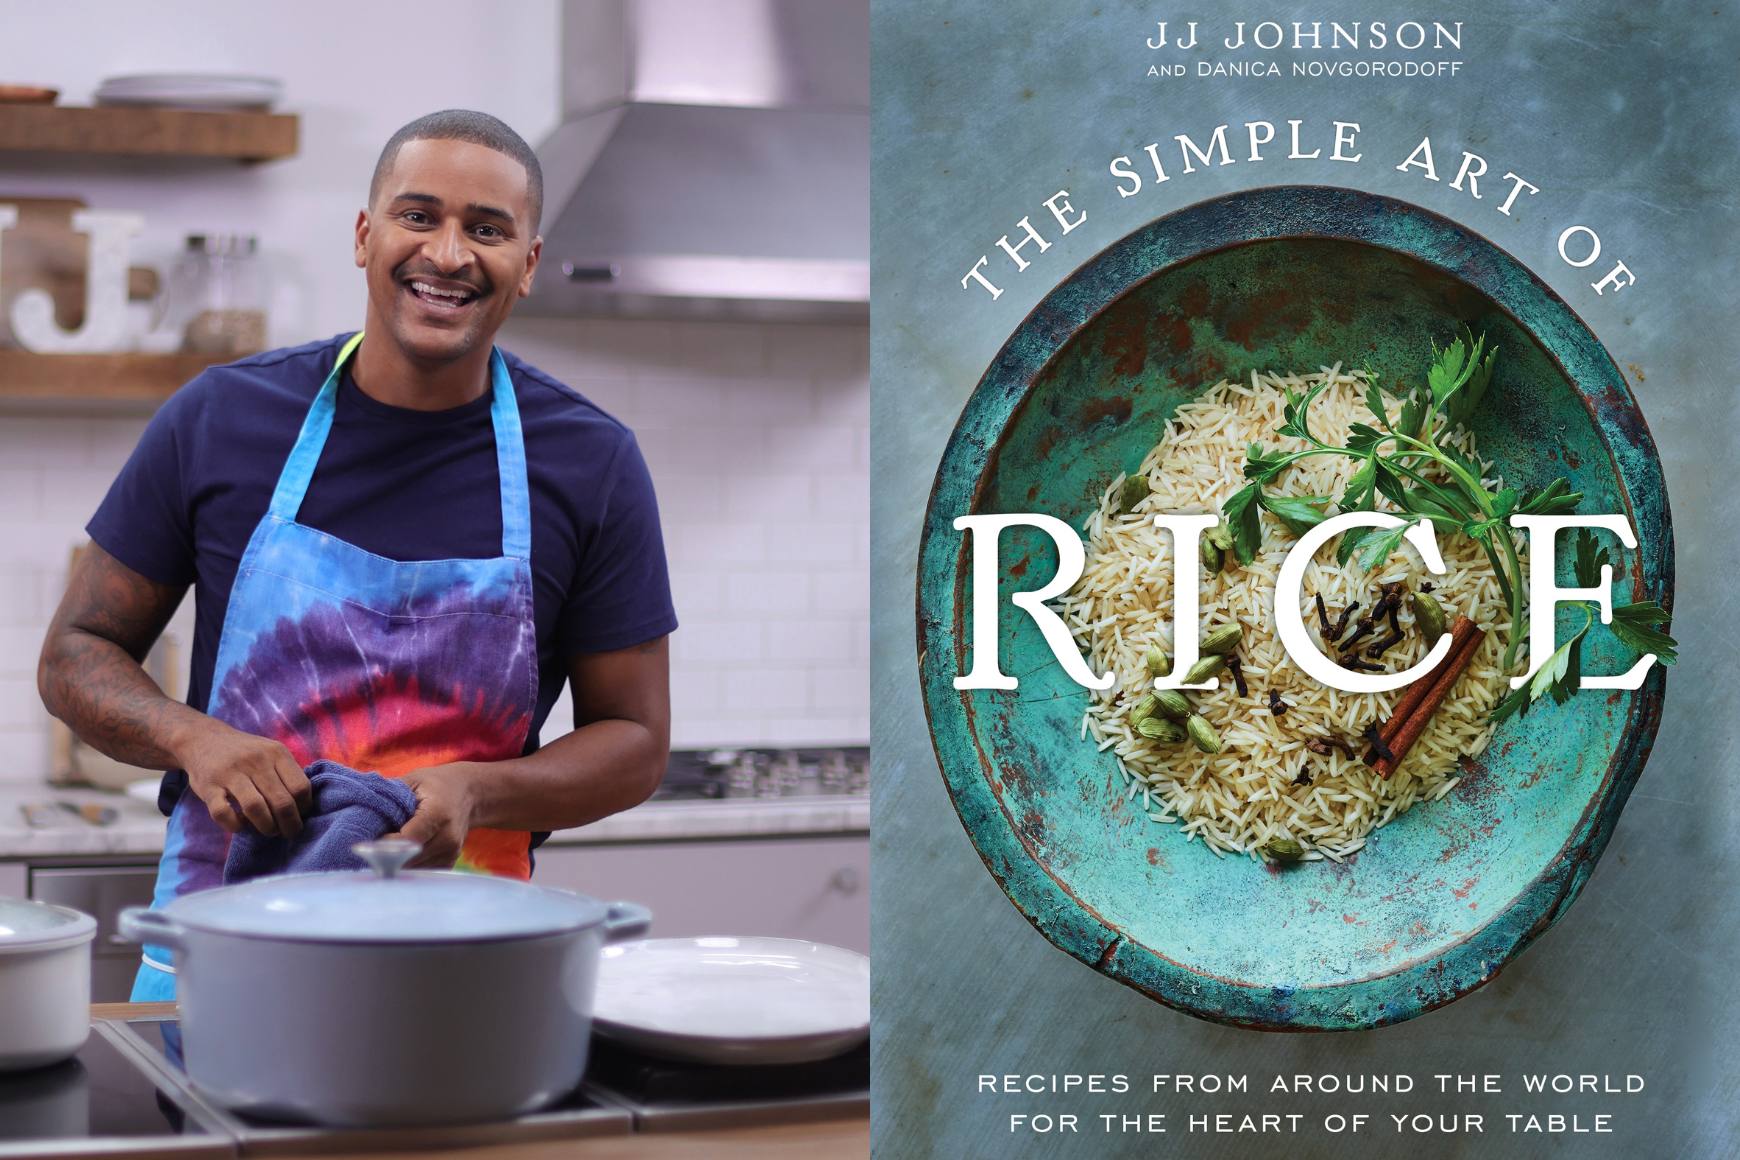 虹色の絞り染めのエプロンを着てキッチンで笑顔で立っているシェフ JJ の写真の横にあるブックアート「The Simple Art of Rice」のコラージュ。